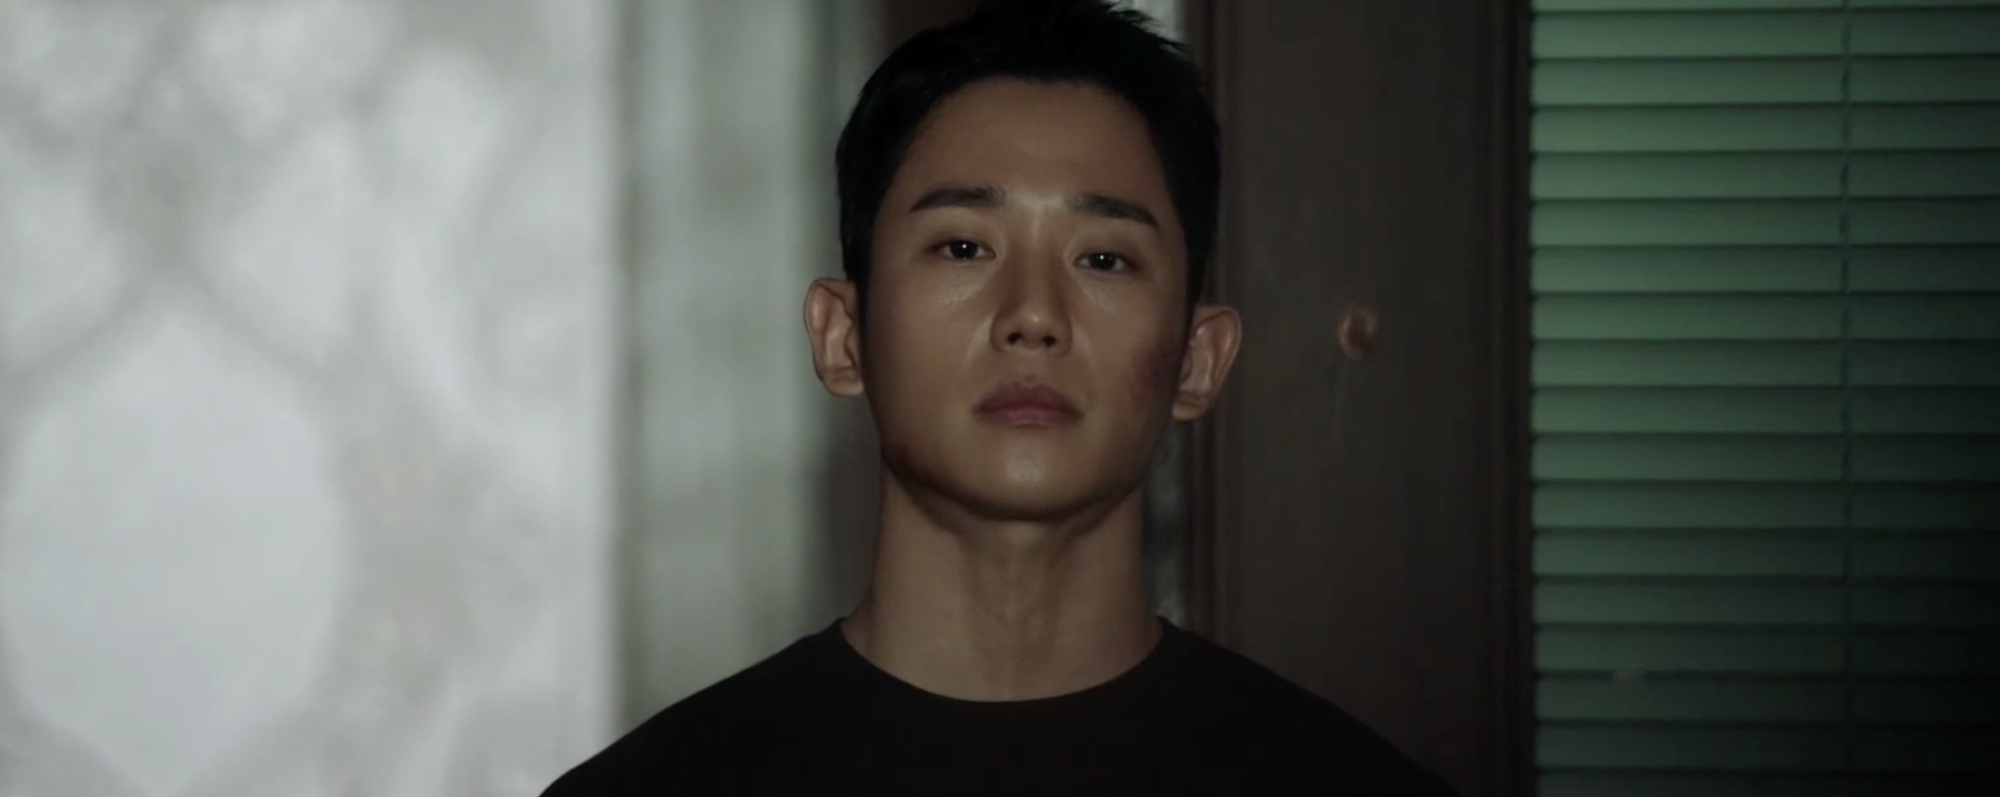 Snowdrop tập 10 tức sôi máu: Jisoo (BLACKPINK) bị tình địch tát sấp mặt, Jung Hae In bất lực đứng nhìn - Ảnh 5.